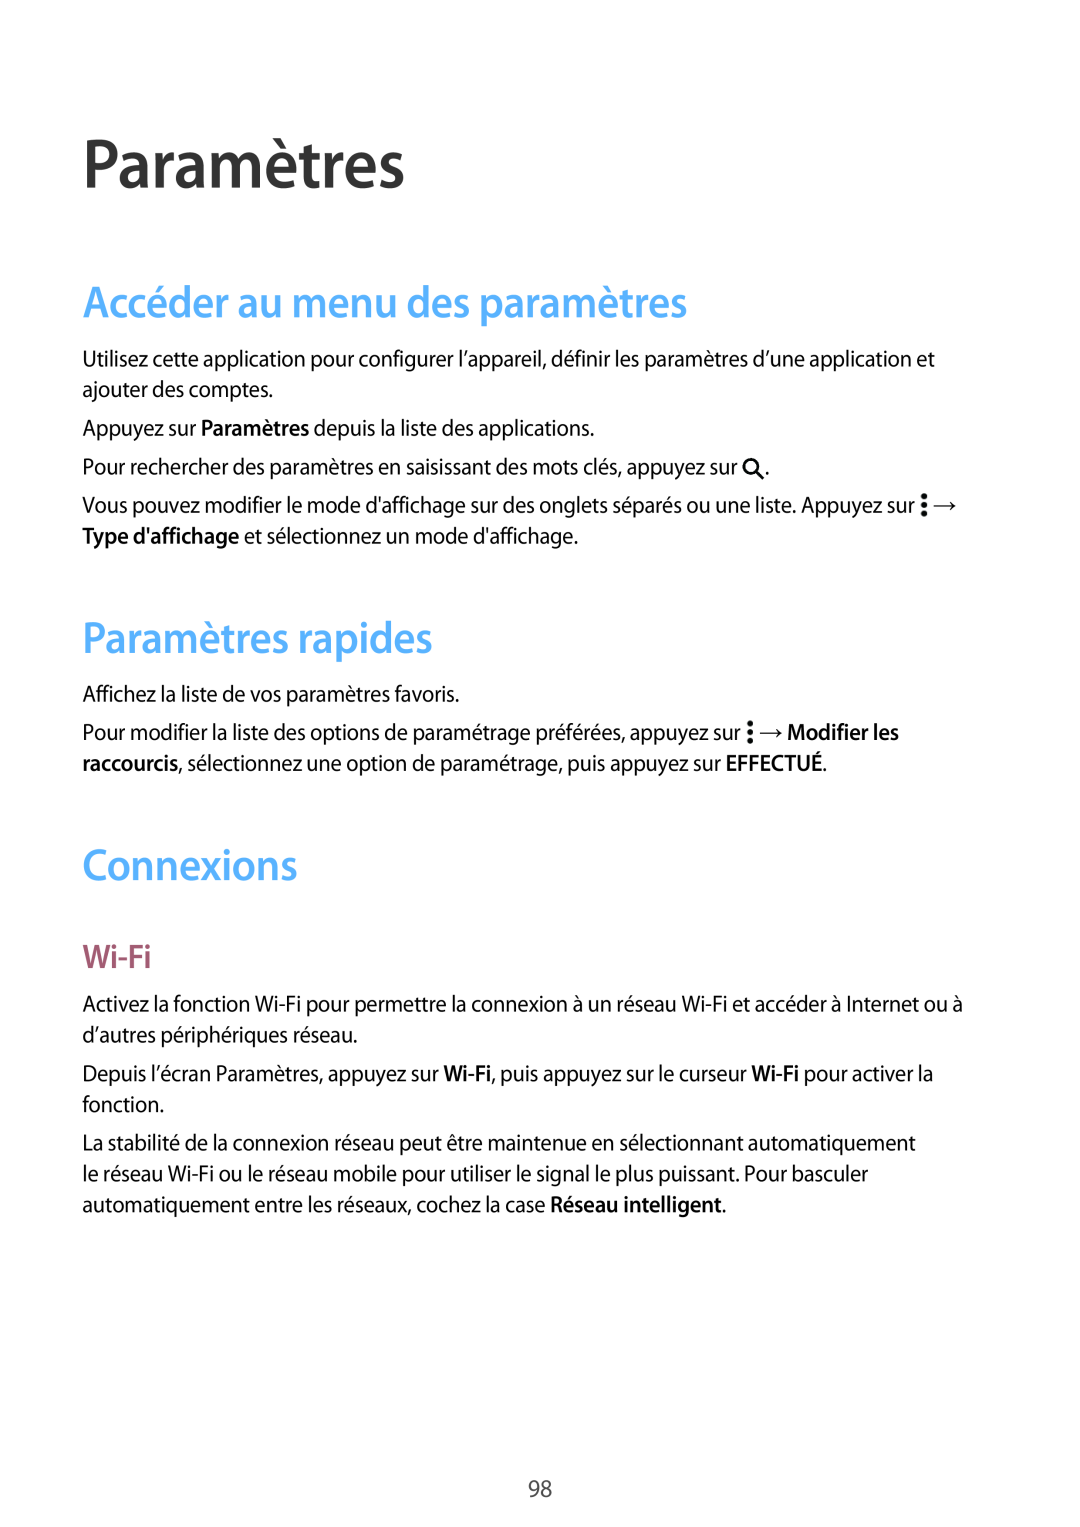 Samsung SM-A300FZKUSFR, SM-A300FZSUXEF manual Accéder au menu des paramètres, Paramètres rapides, Connexions, Wi-Fi 